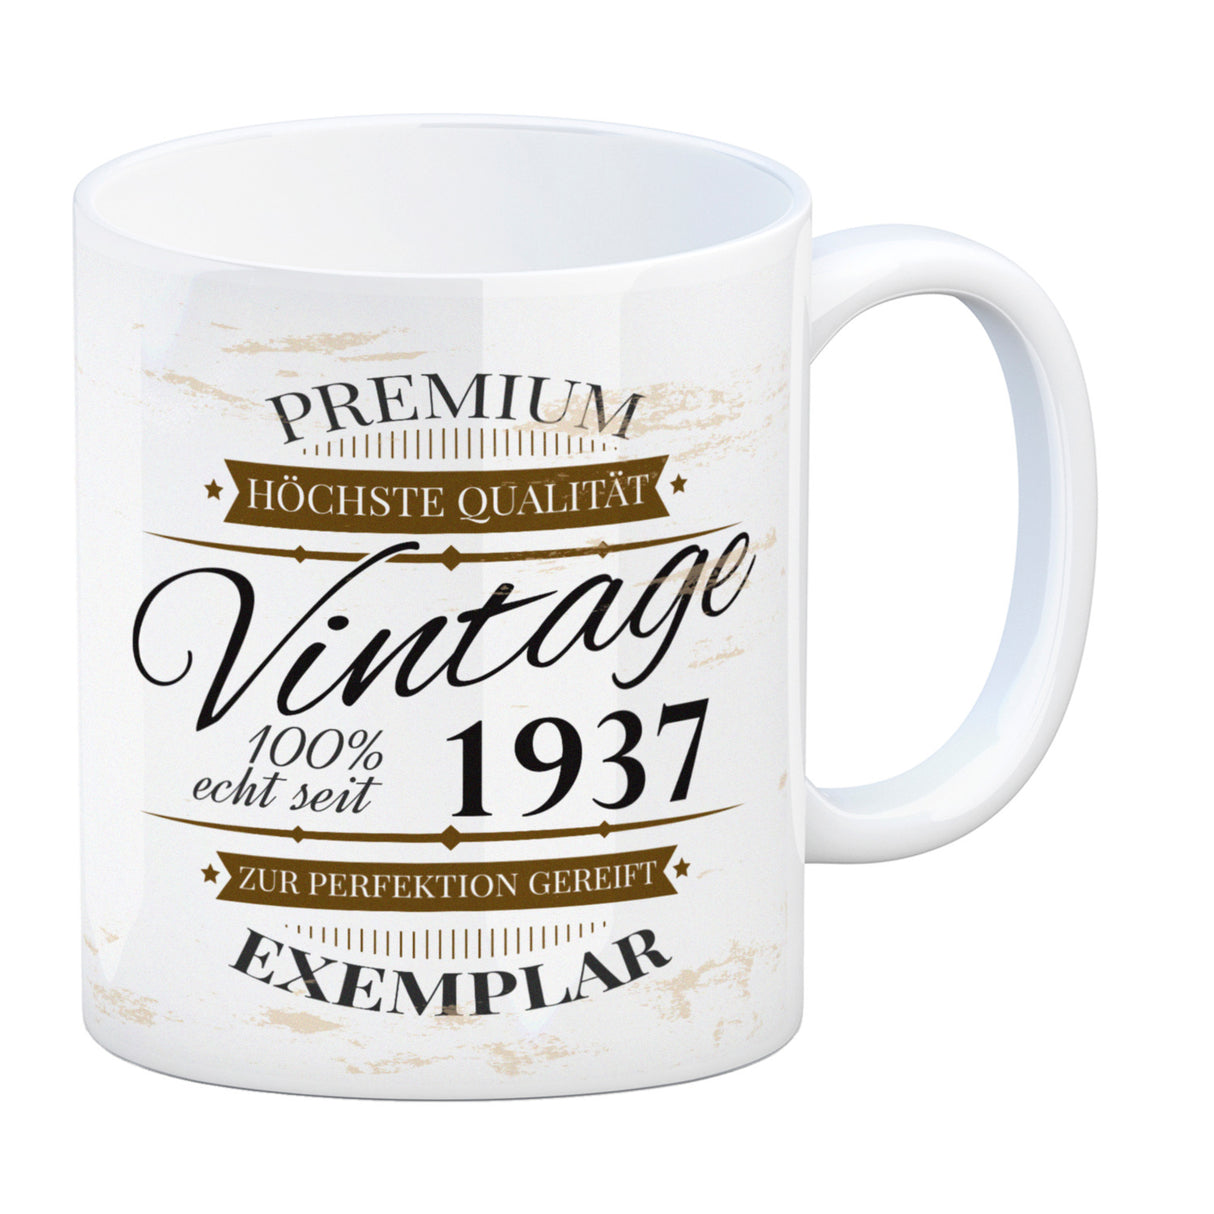 Vintage Tasse 100% echt seit 1937 - Premium Exemplar - Zur Perfektion gereift -